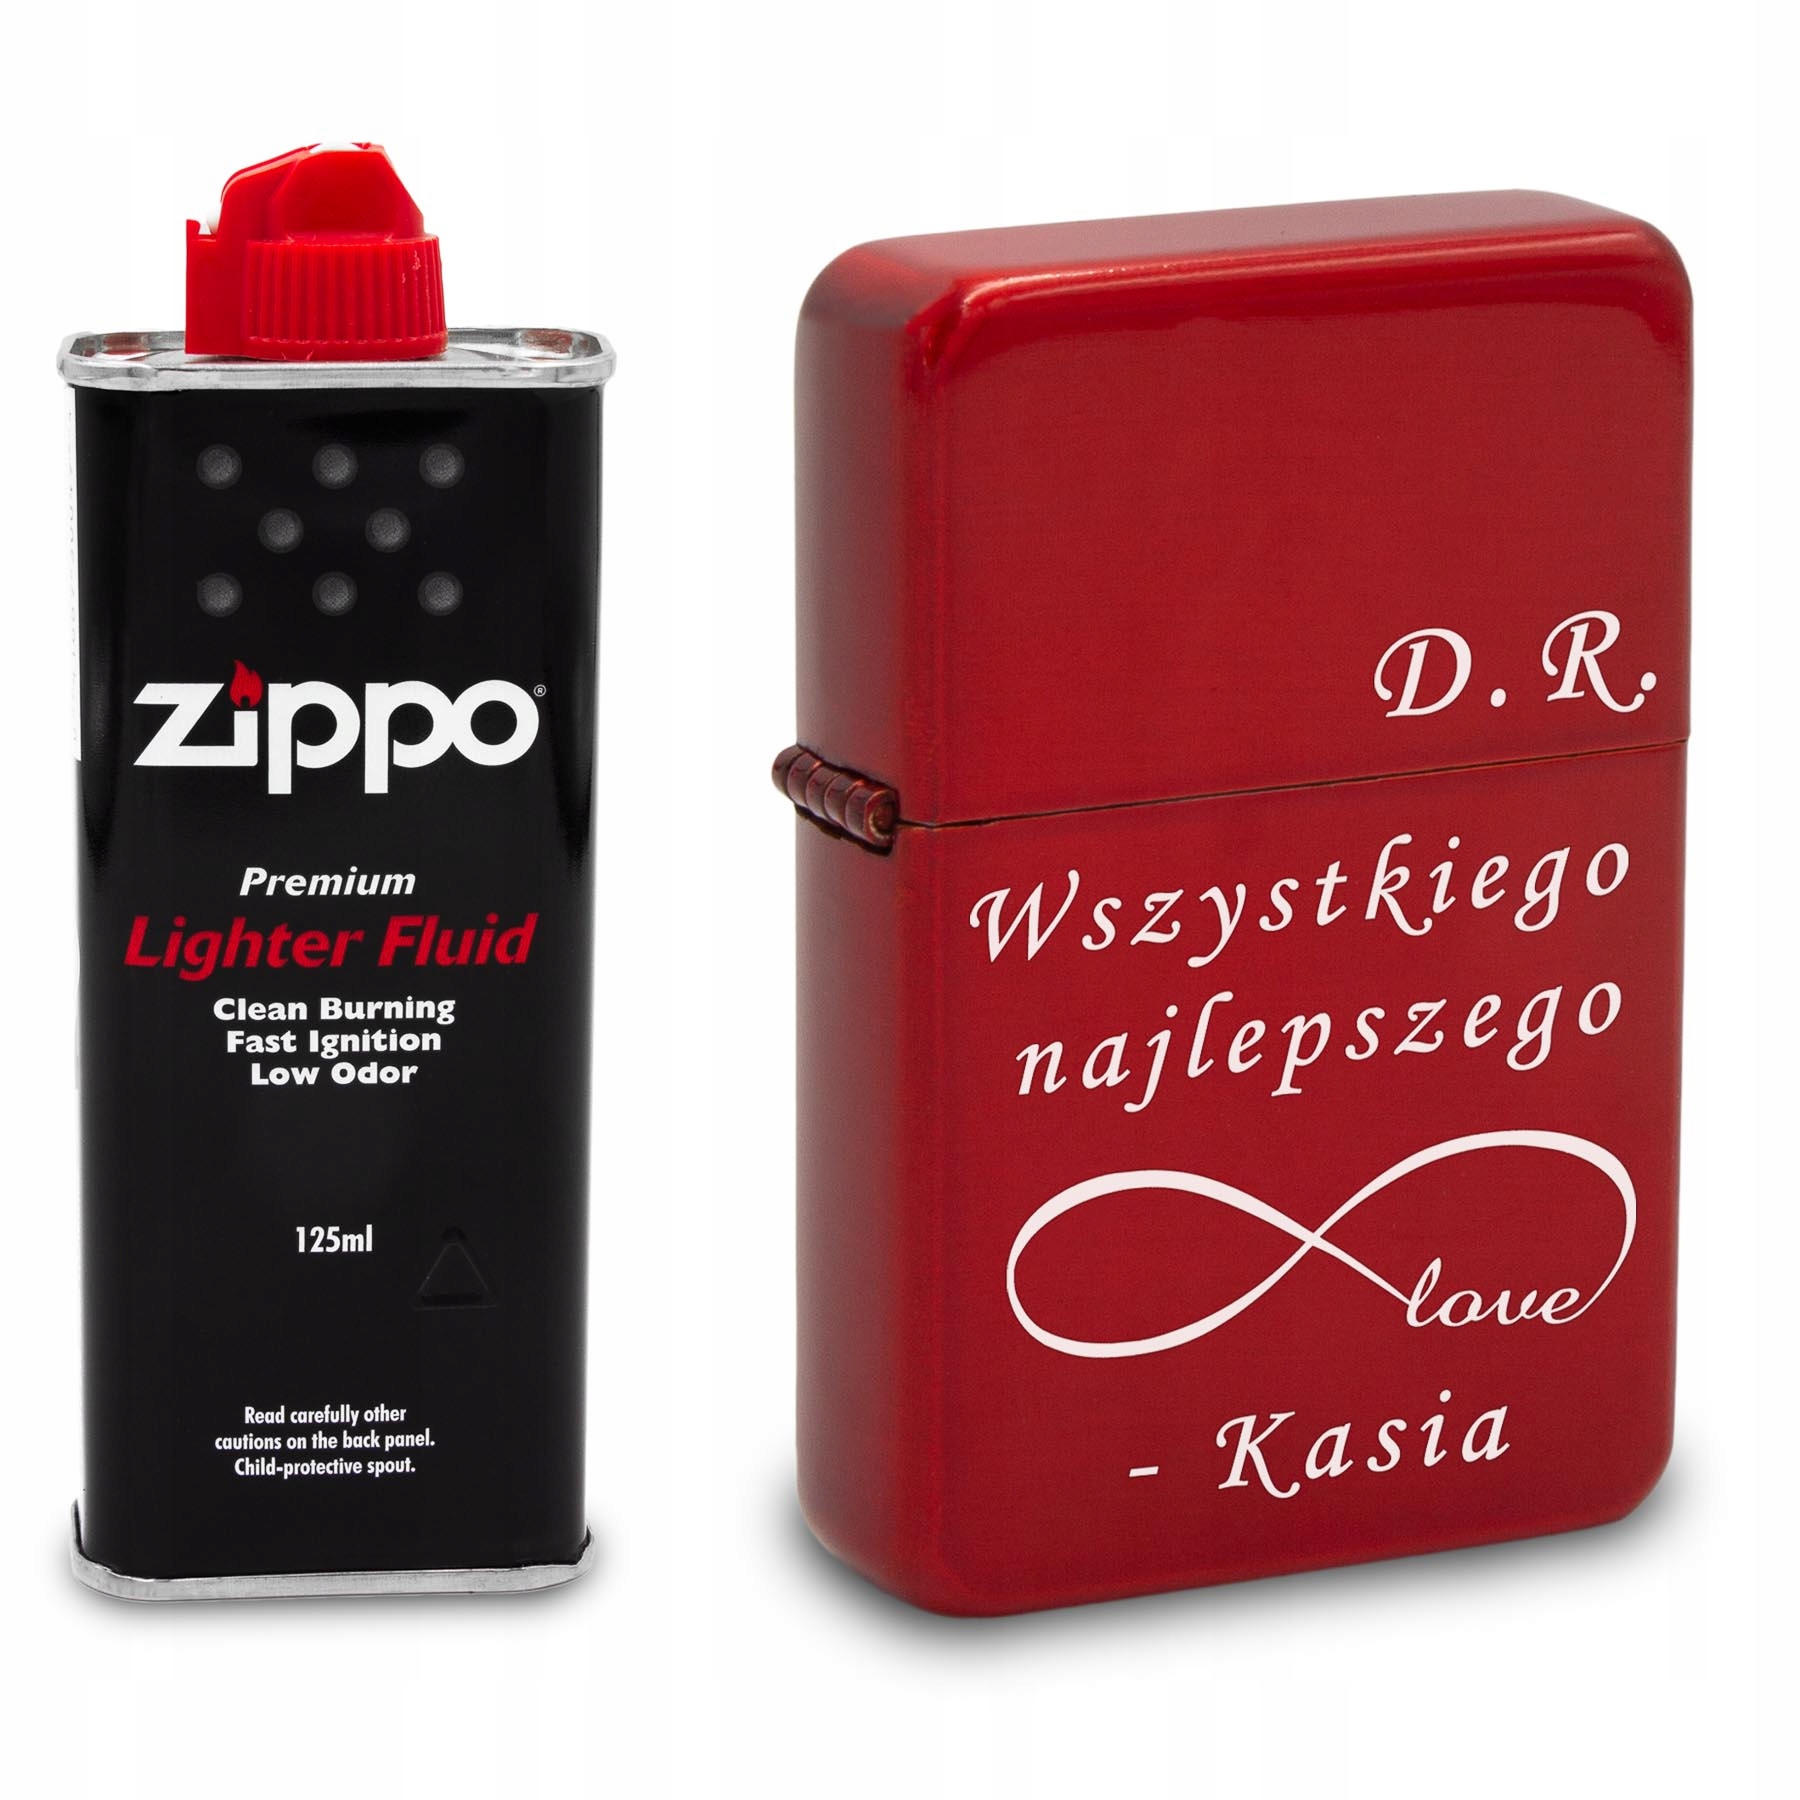 Купить Красная бензиновая зажигалка с ГРАВИРОВКОЙ + Zippo: отзывы, фото .